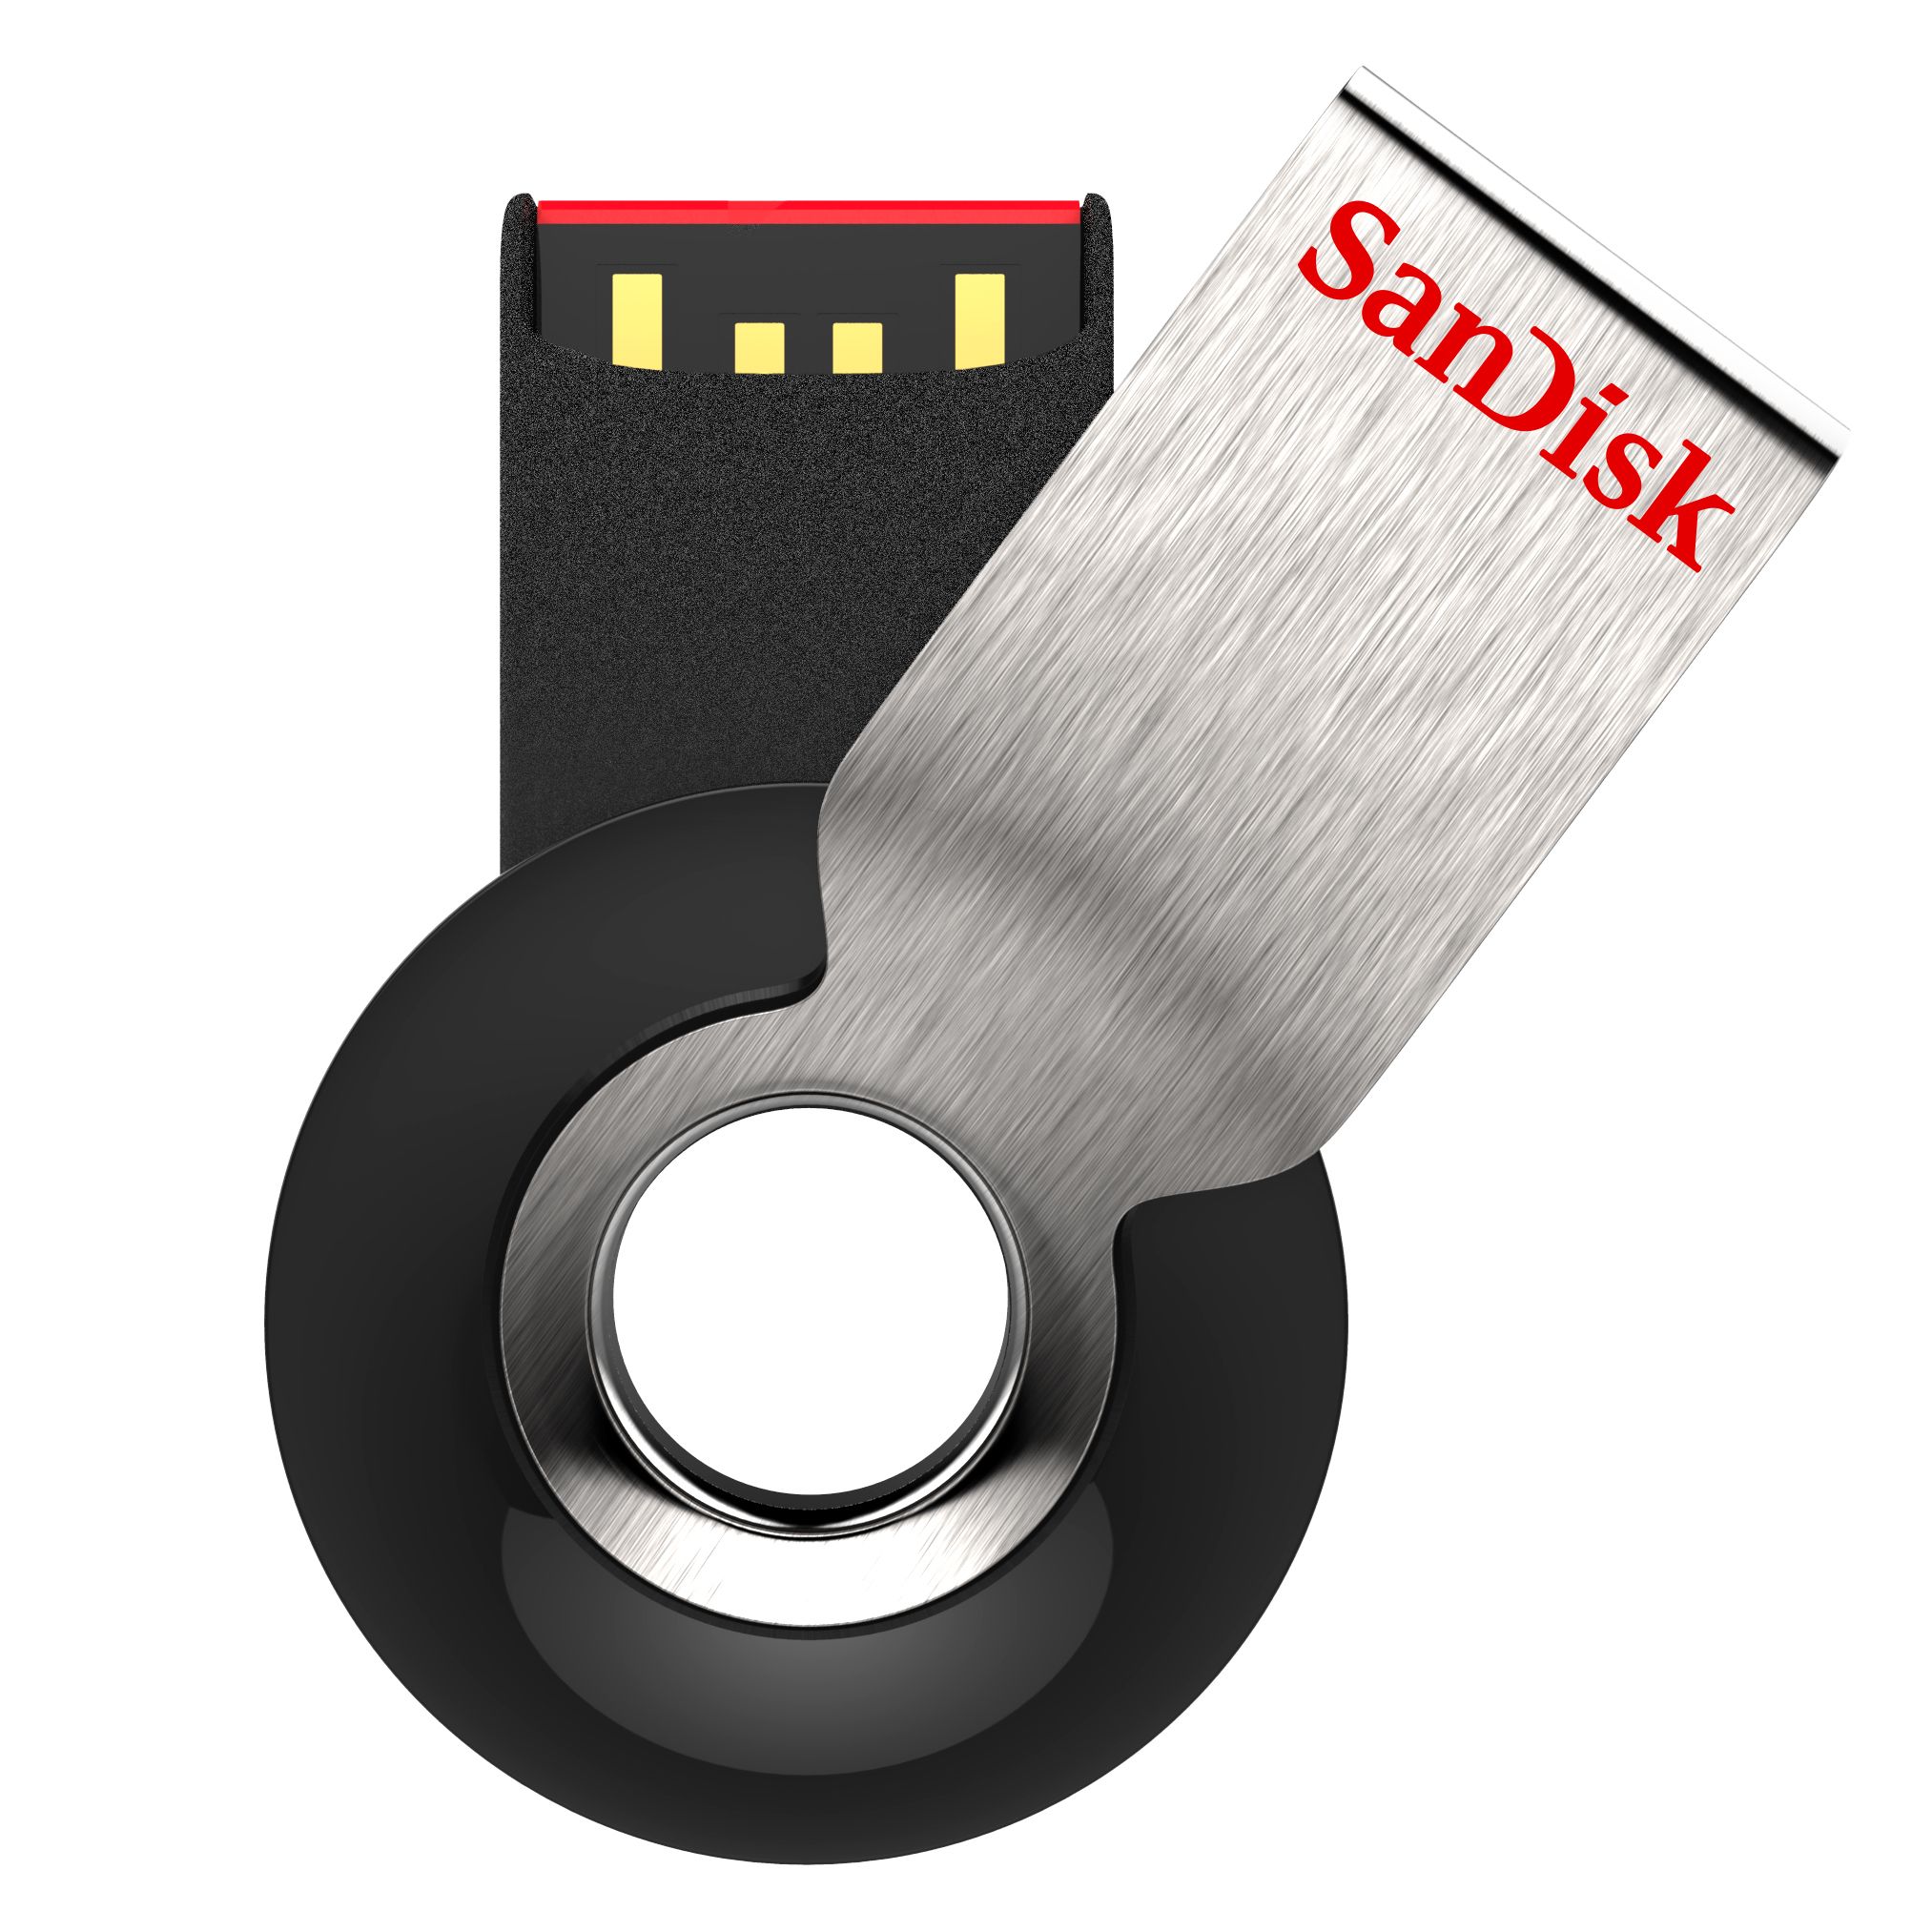 Cruzer Orbit USB Flash Drive - 16GB